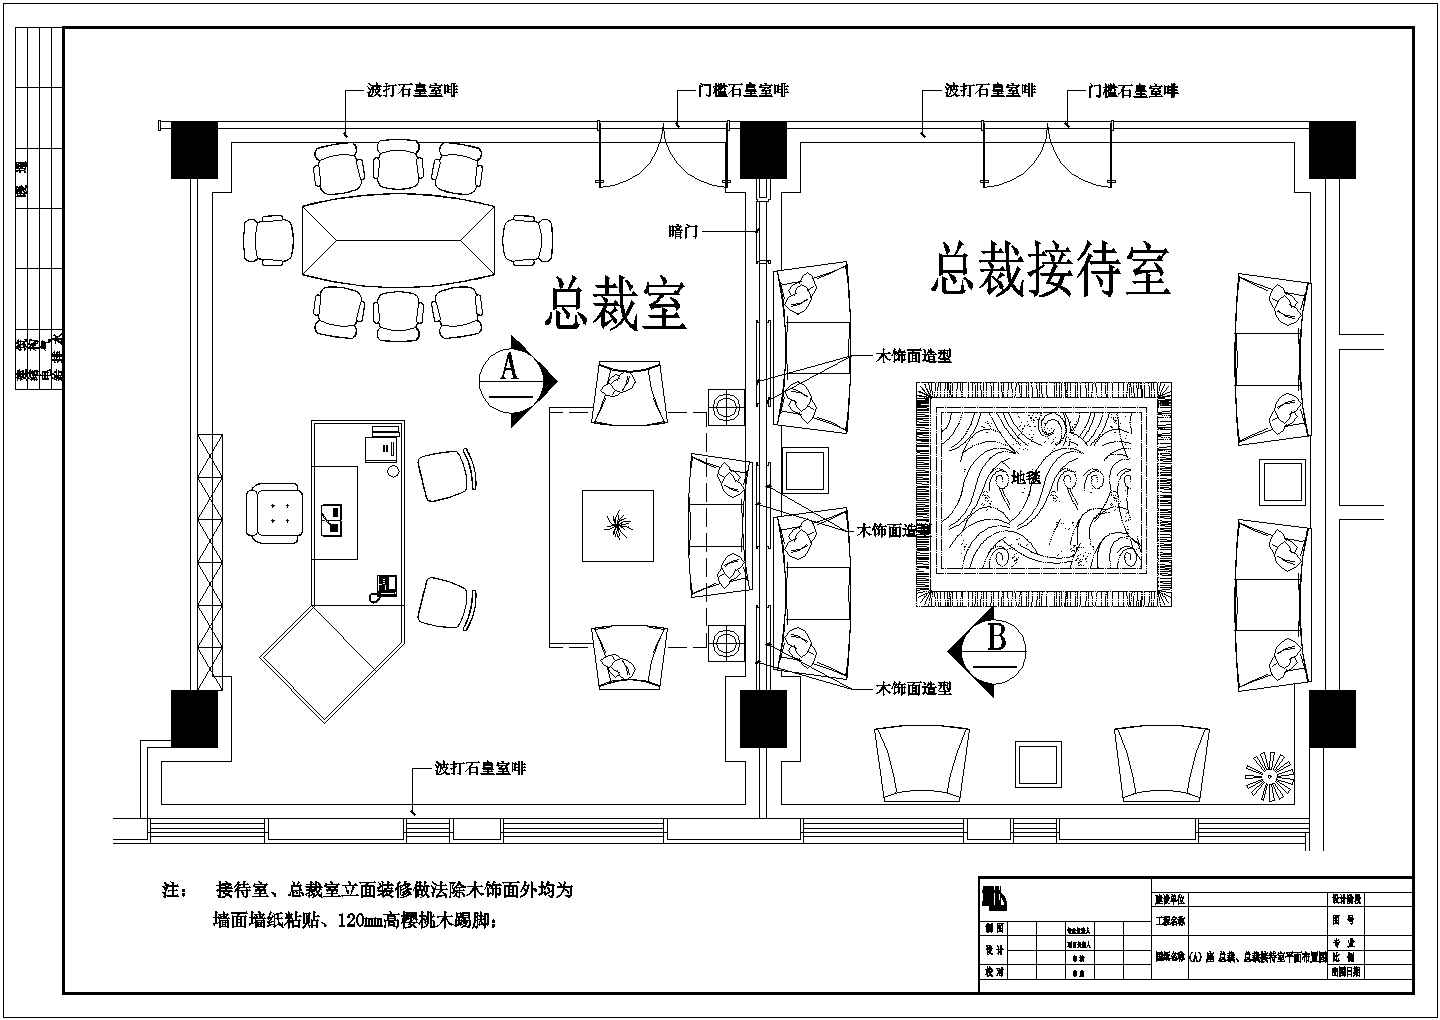 【北京】现代化产业园区高档研发大楼装修施工图